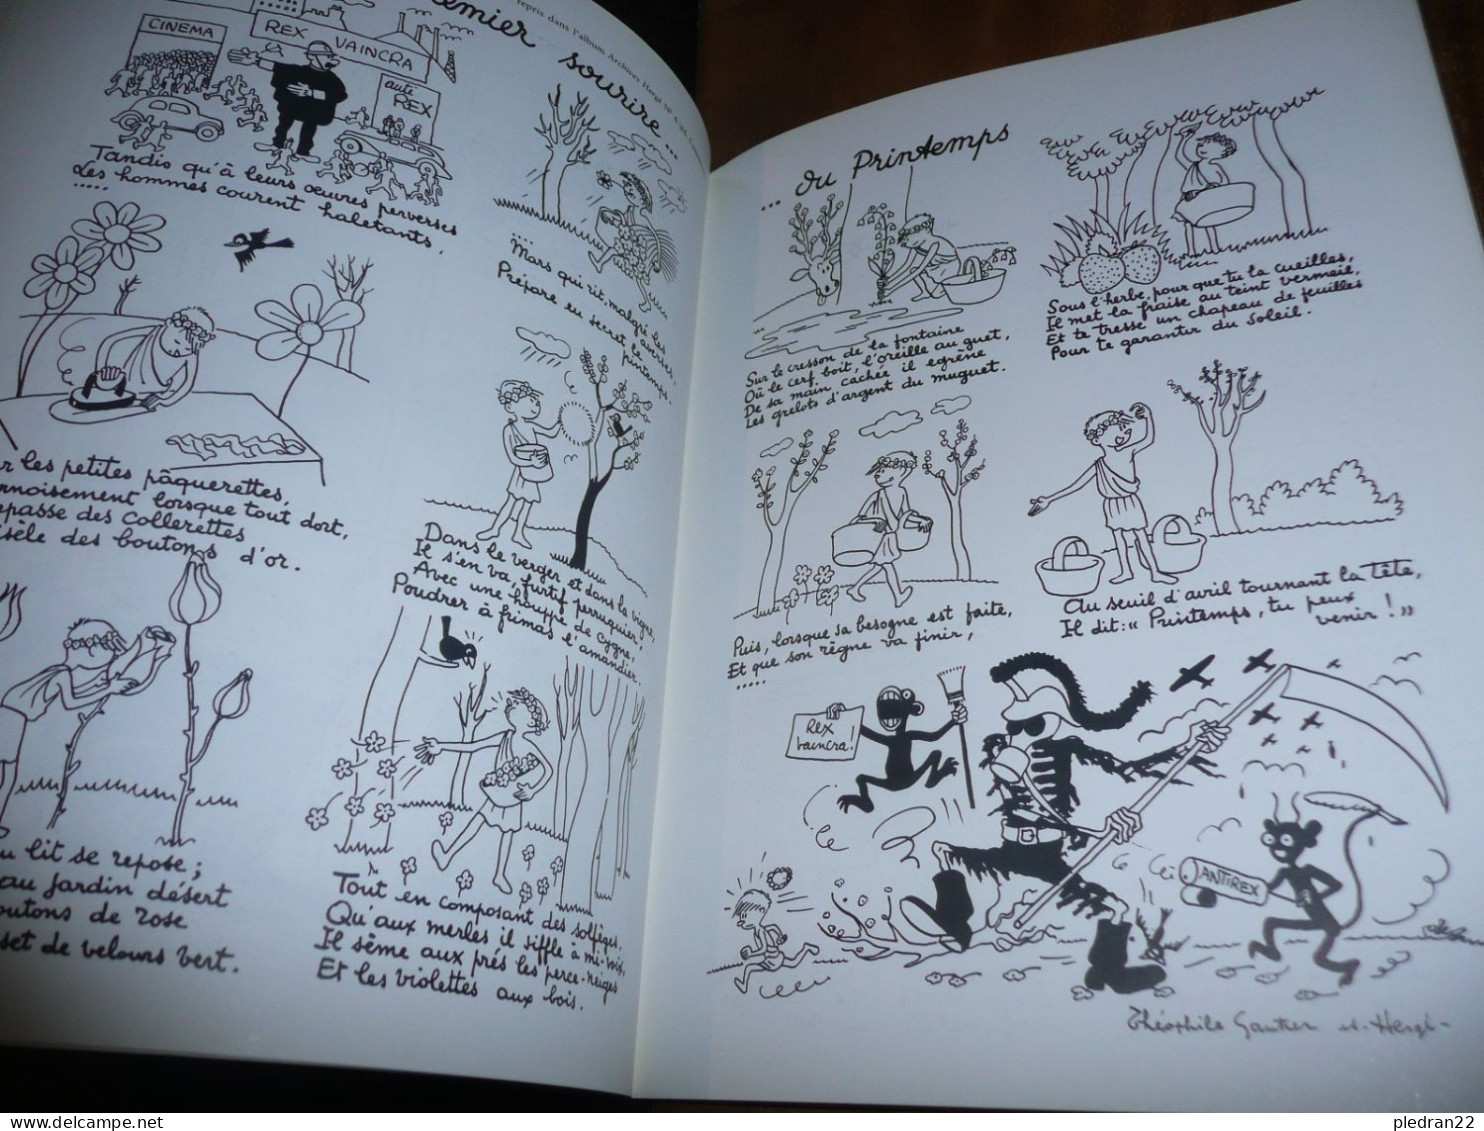 NUMA SADOUL ENTRETIENS AVEC HERGE TINTIN ET MOI + DIVERS EDITIONS CASTERMAN 1983 - Hergé